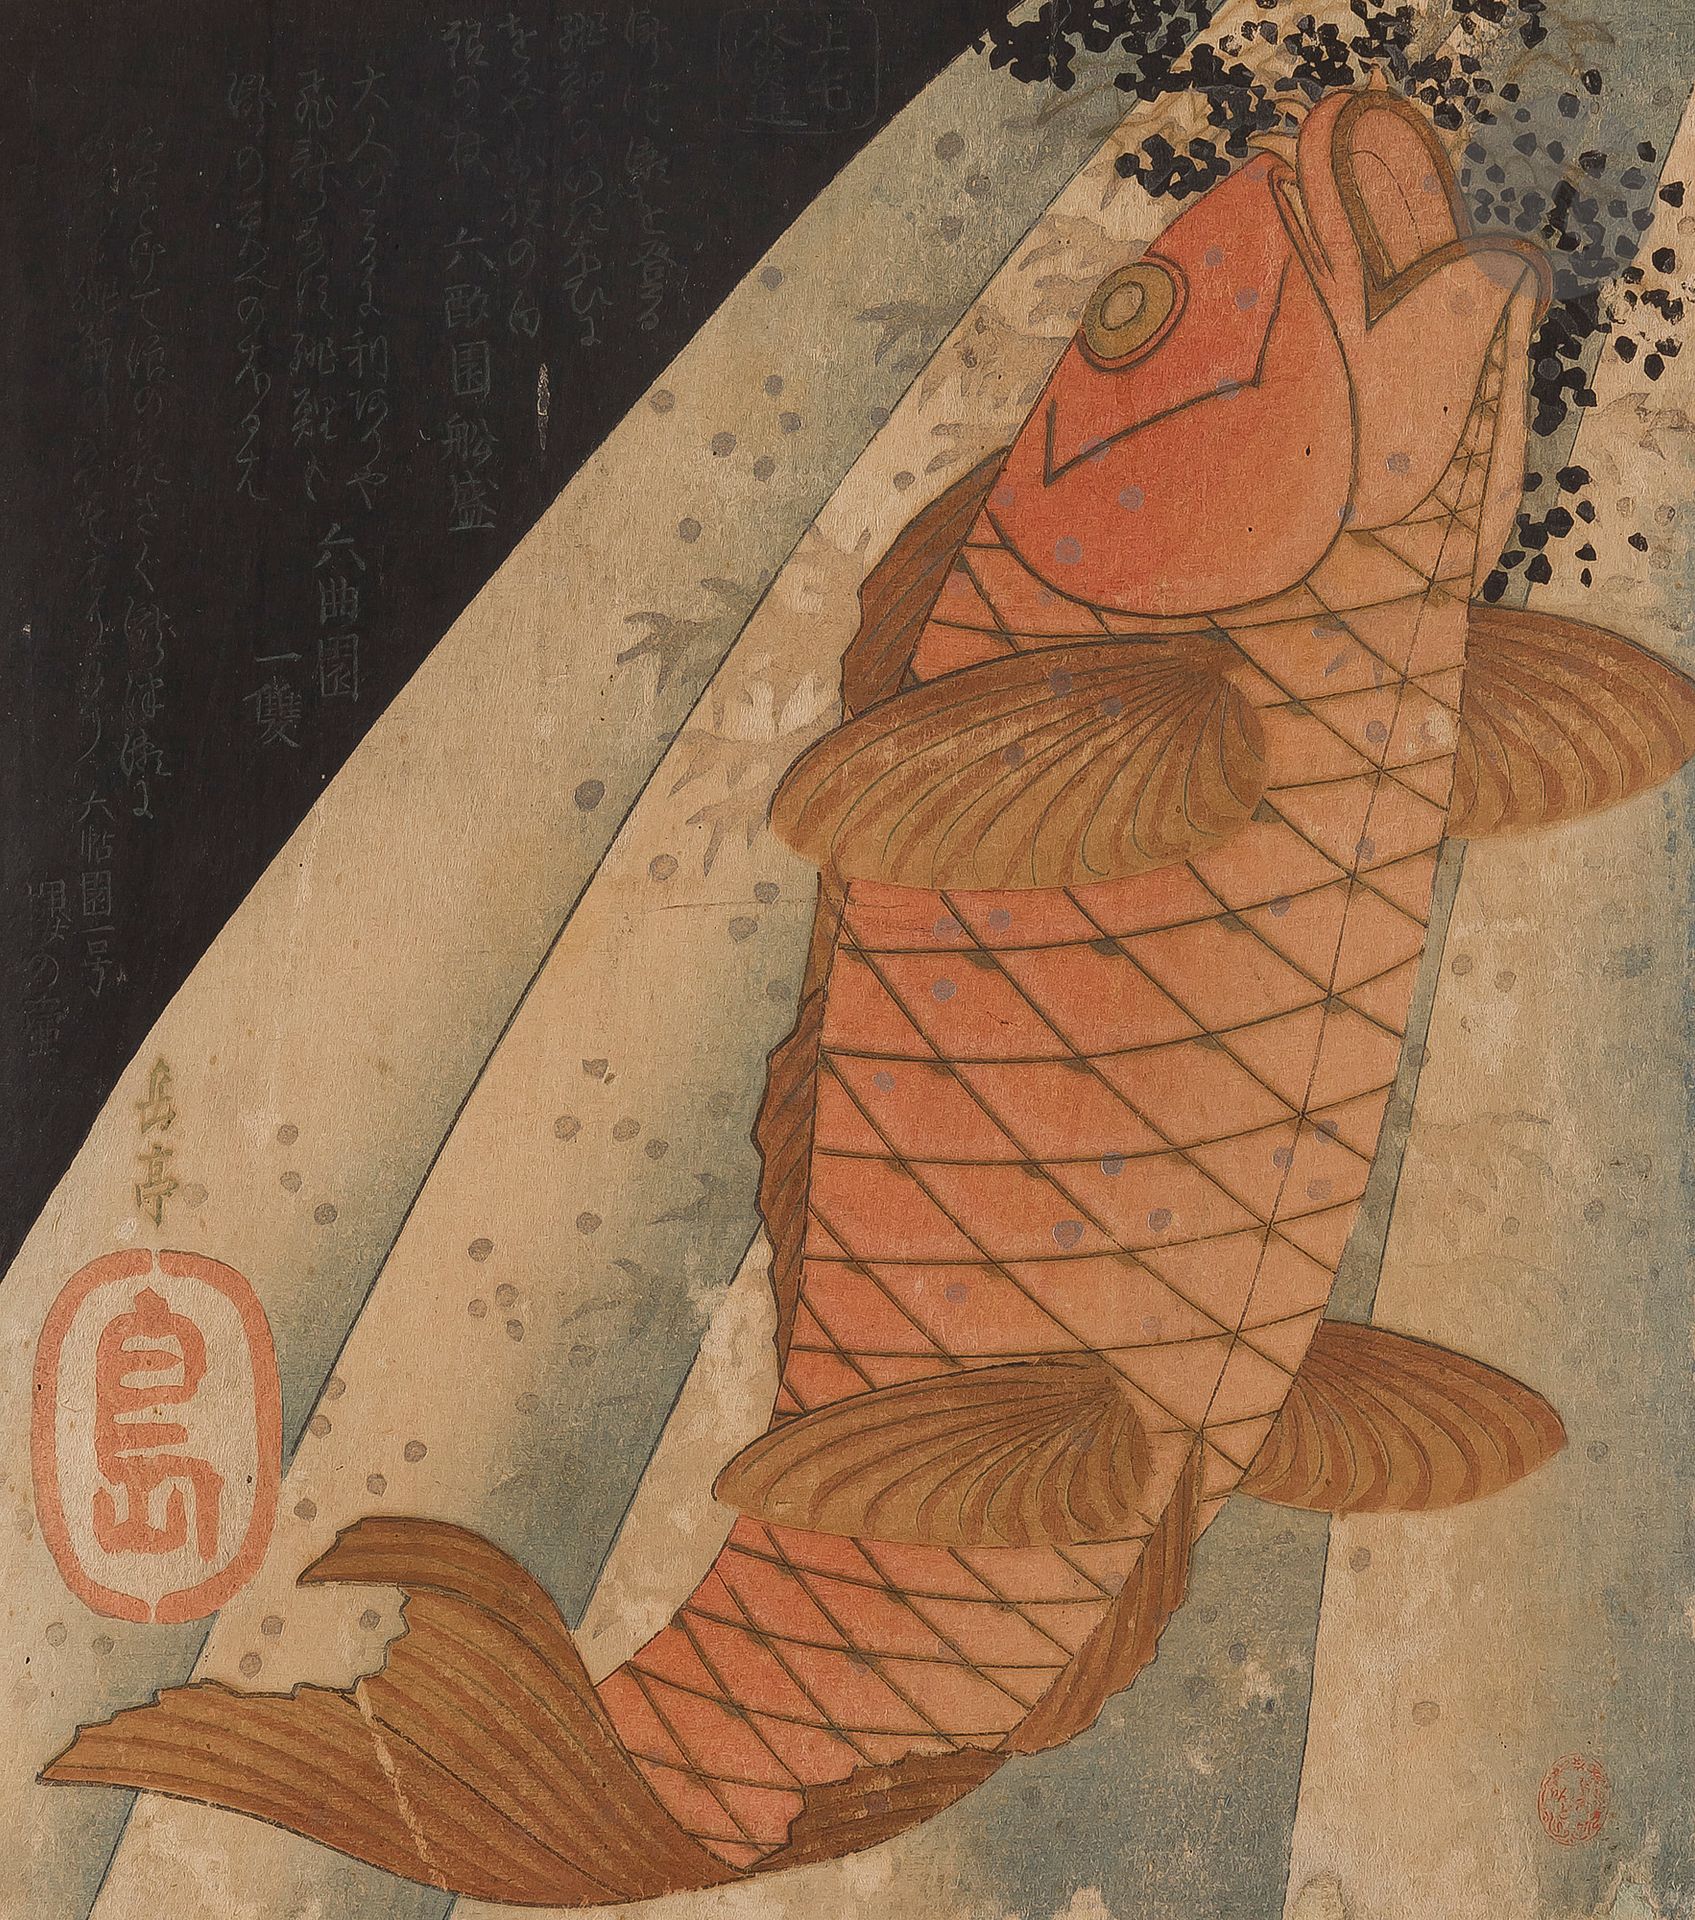 Null Yashima Gakutei (1786-1868), 八岛岳亭 - 鲤鱼登り - 鯉の滝登り, 日本, 19世纪20年代末邮票
锦绘格式的锦绘袈裟&hellip;